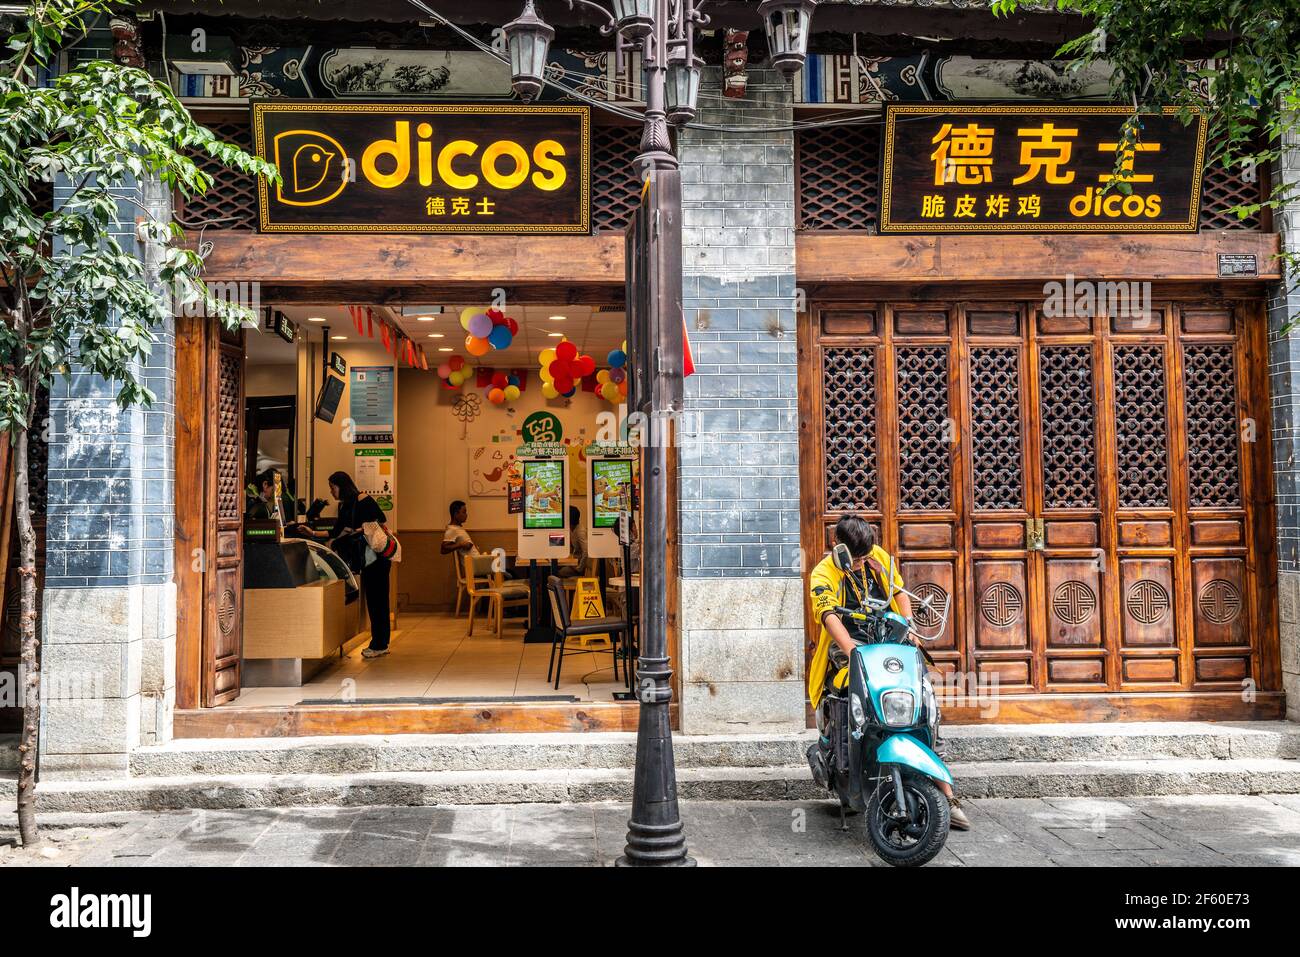 Dali Chine , 5 octobre 2020 : restaurant Dicos vue de face une chaîne chinoise de restauration rapide dans Dali Yunnan Chine Banque D'Images